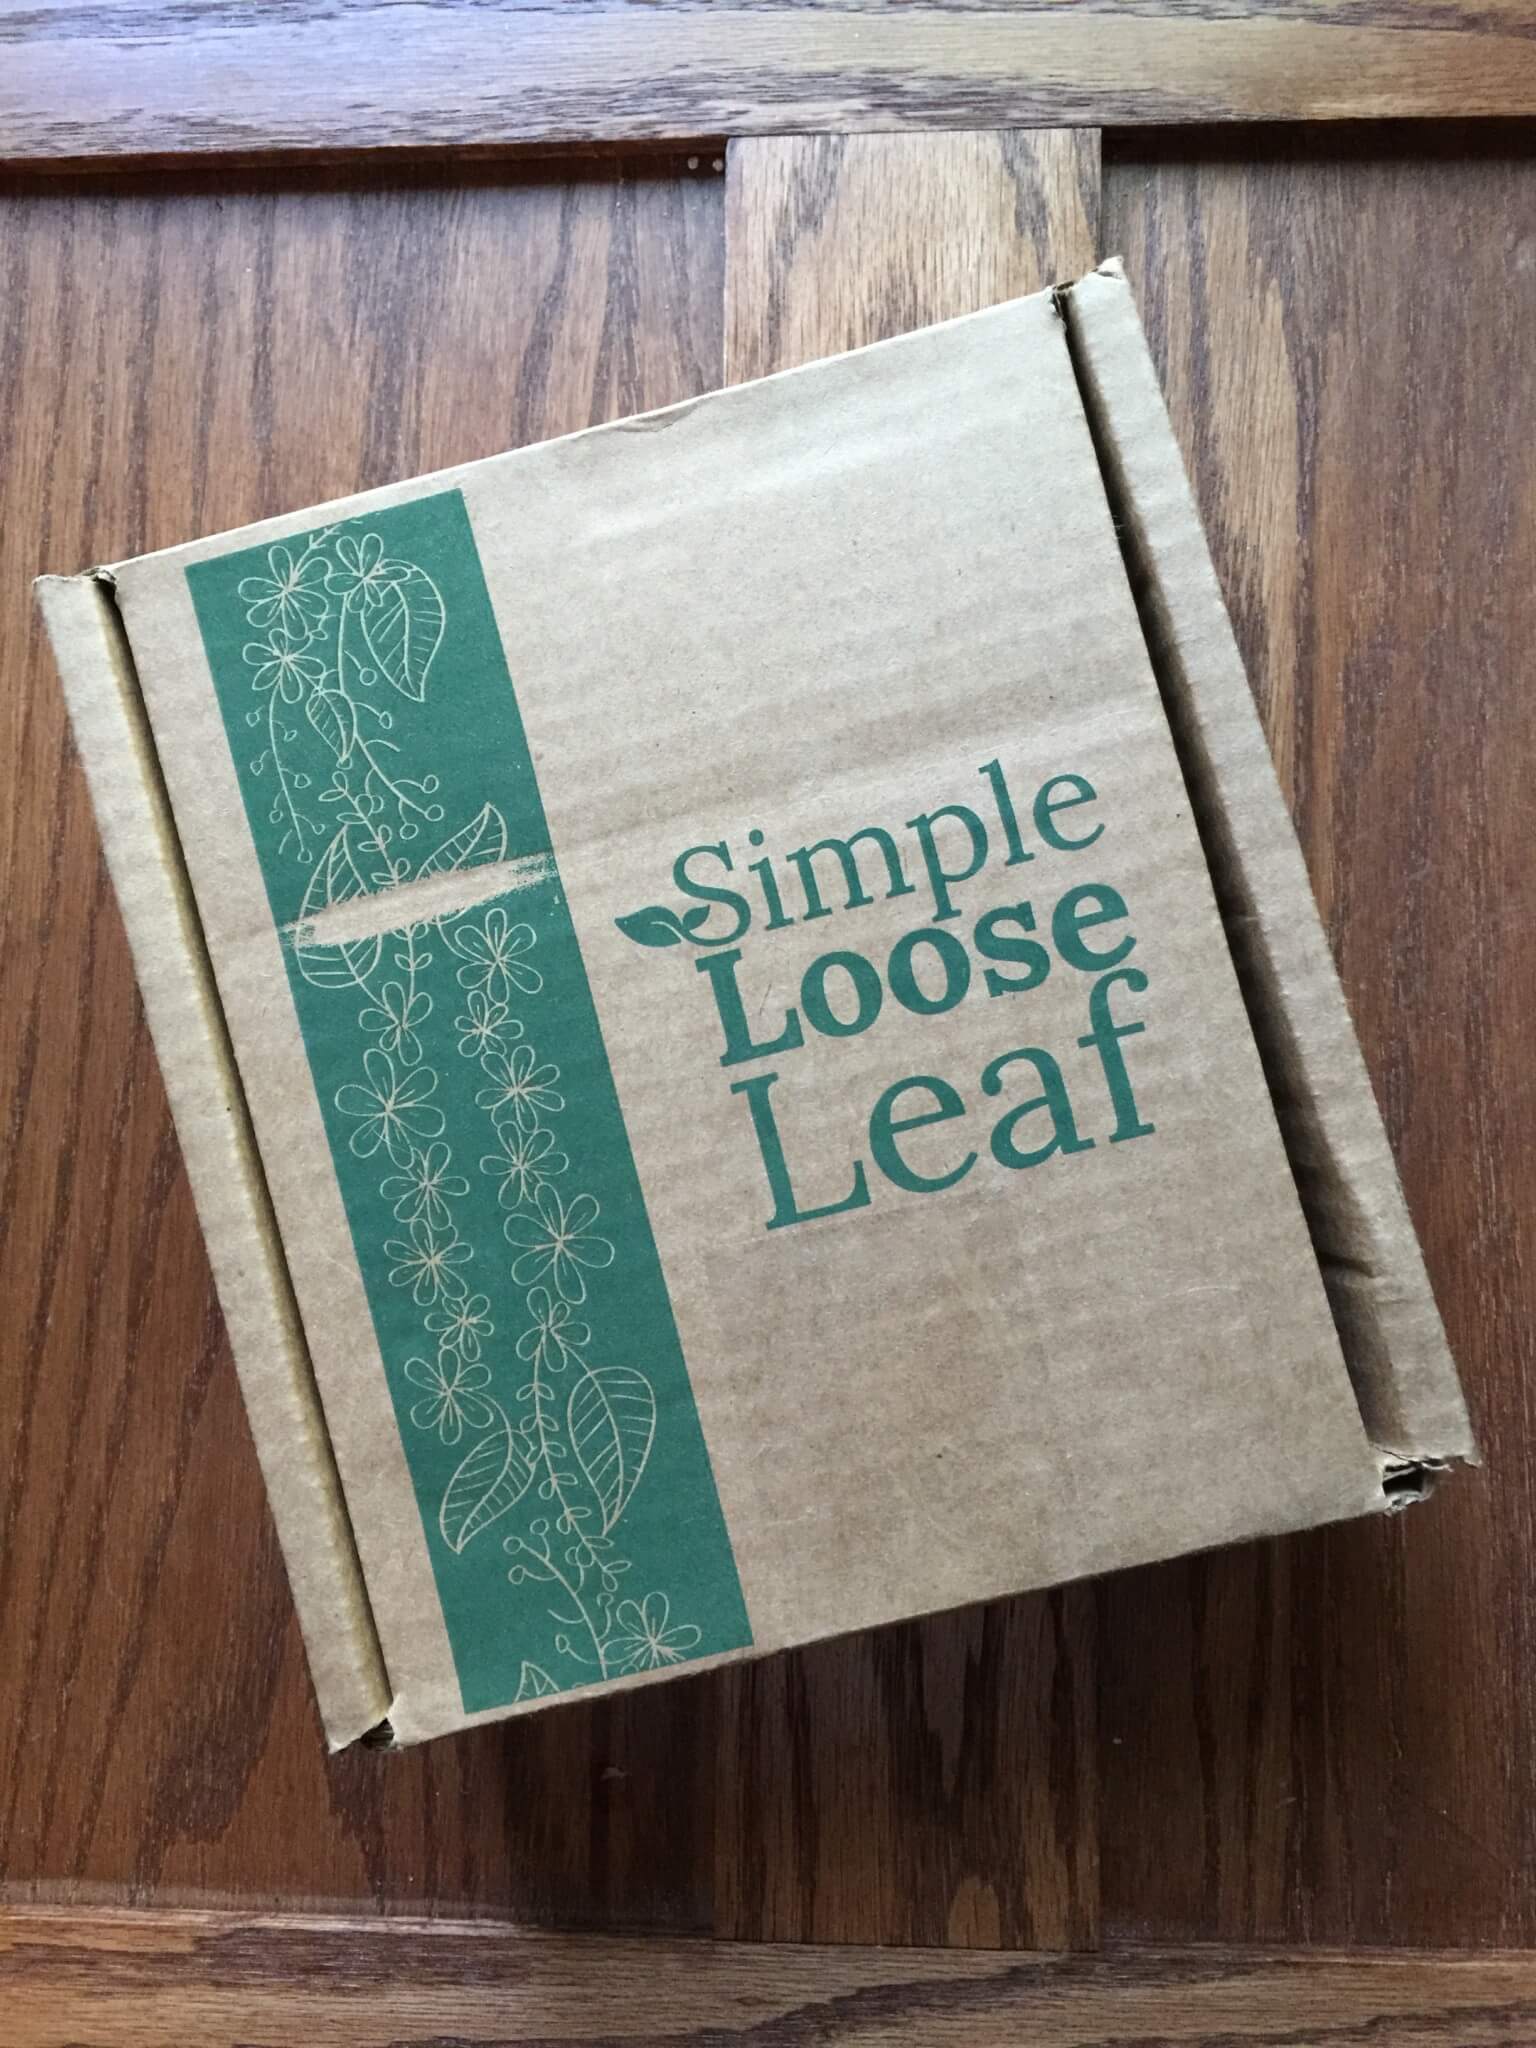 loose leaf tea box